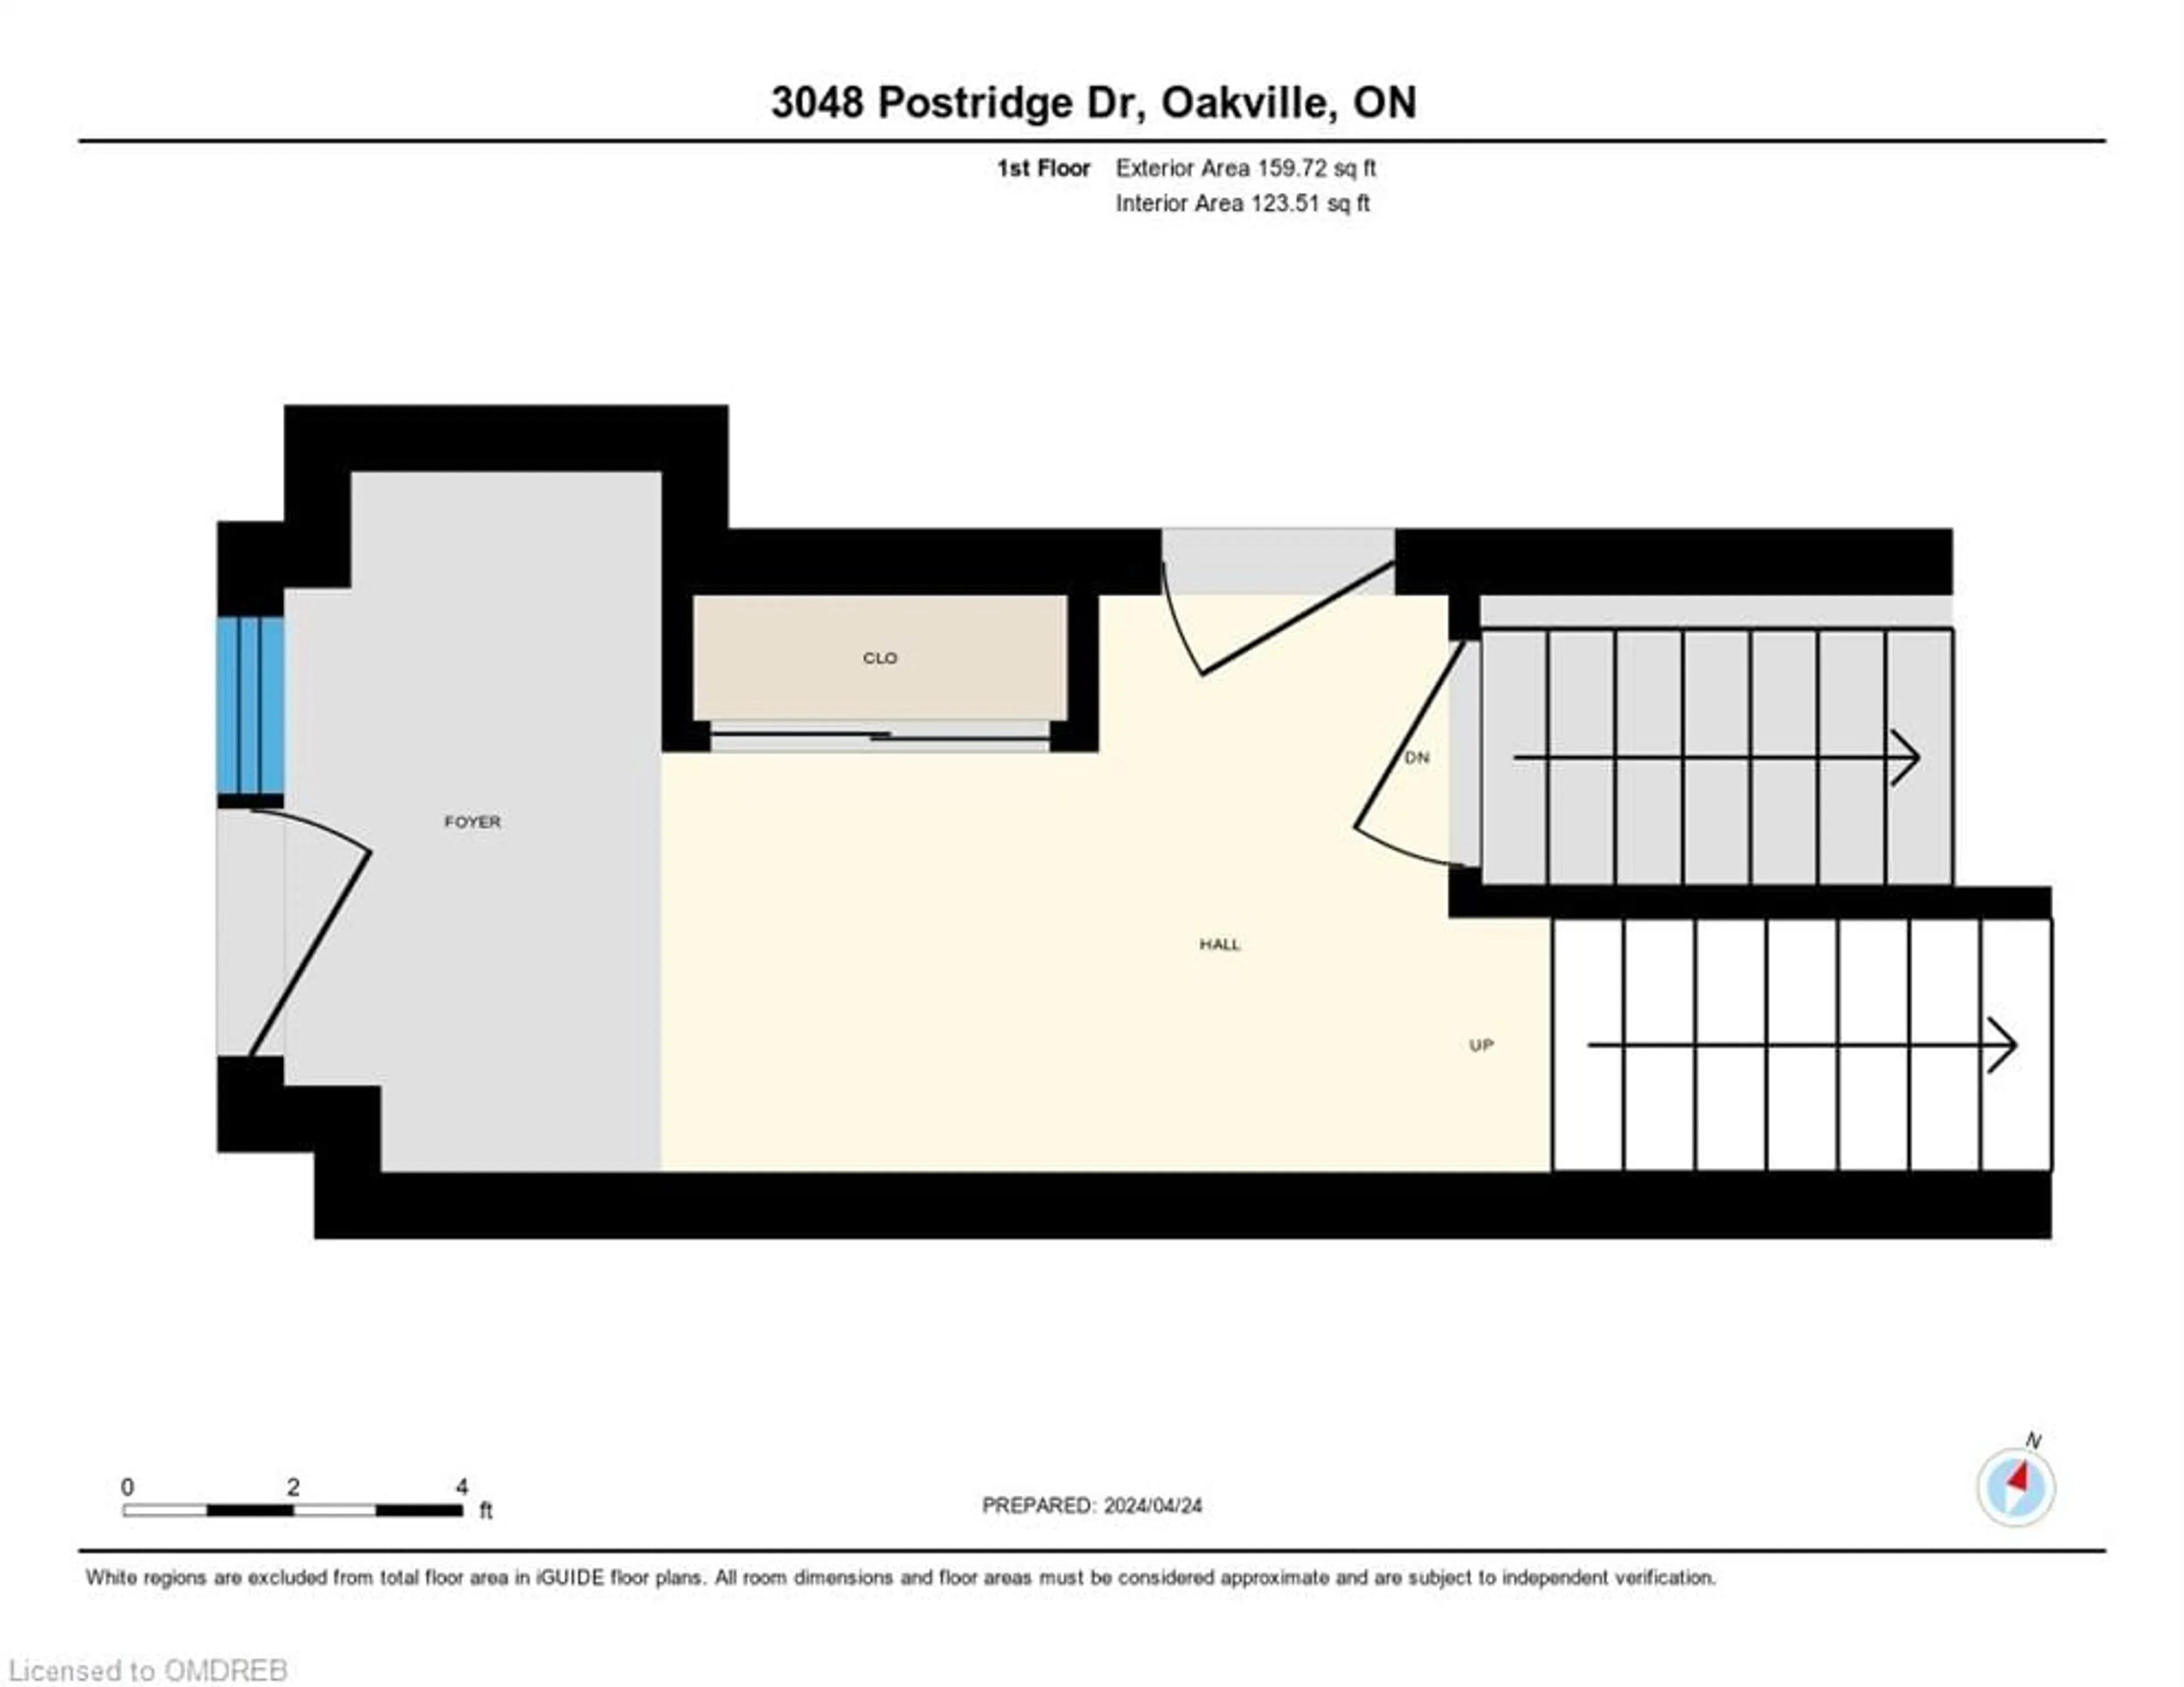 Floor plan for 3048 Postridge Dr, Oakville Ontario L6H 0R9